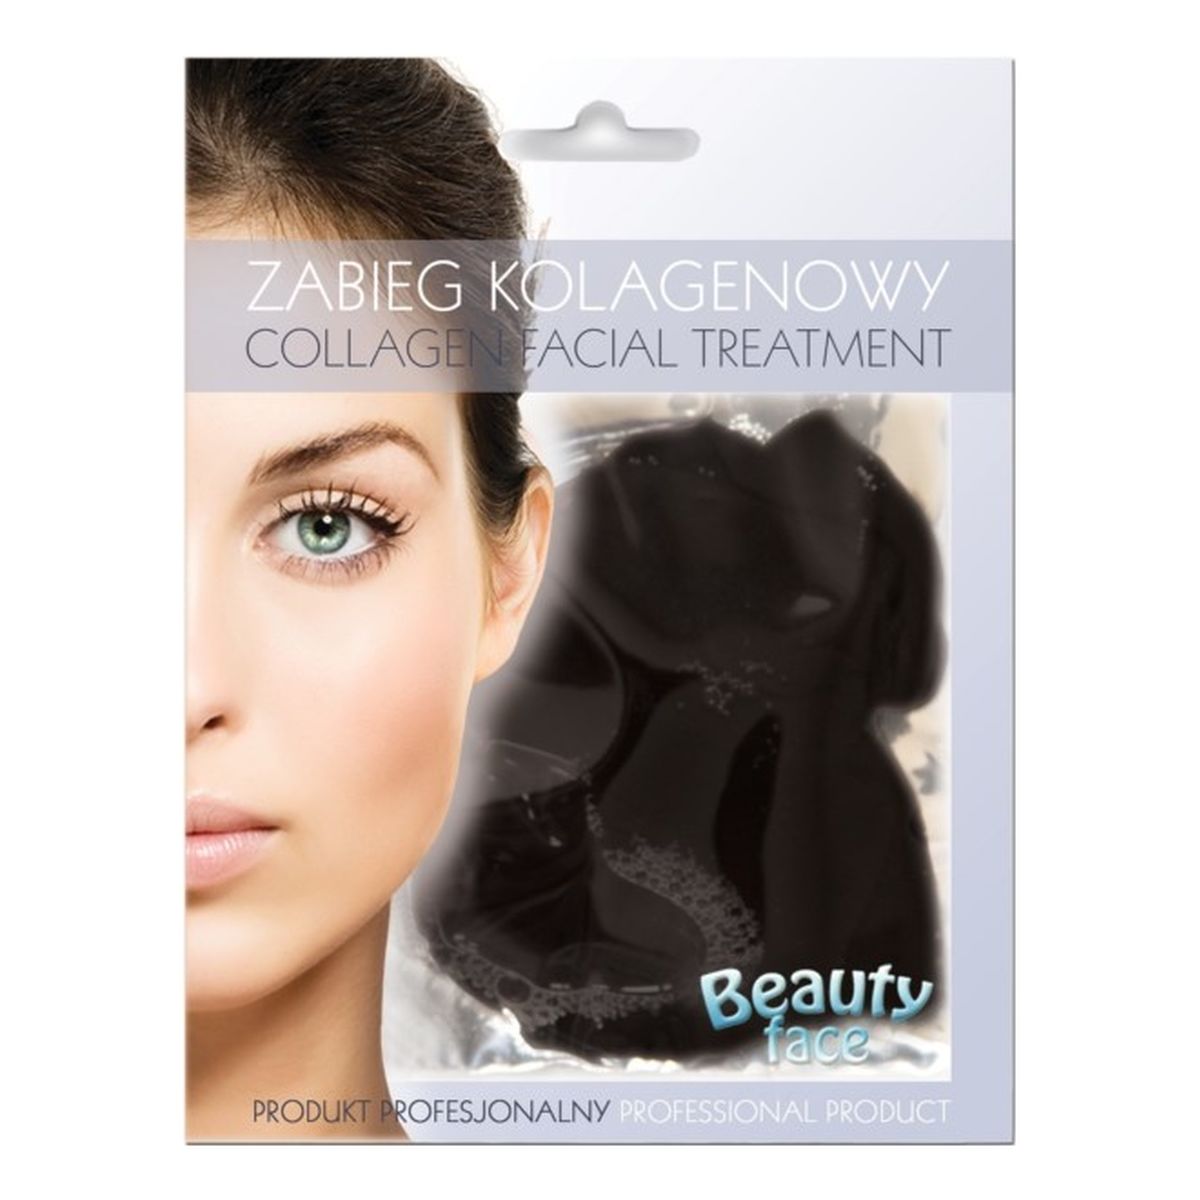 Beauty Face Collagen Facial Treatment Maska Kolagenowa Oczyszczająca I Zmniejszająca Blizny